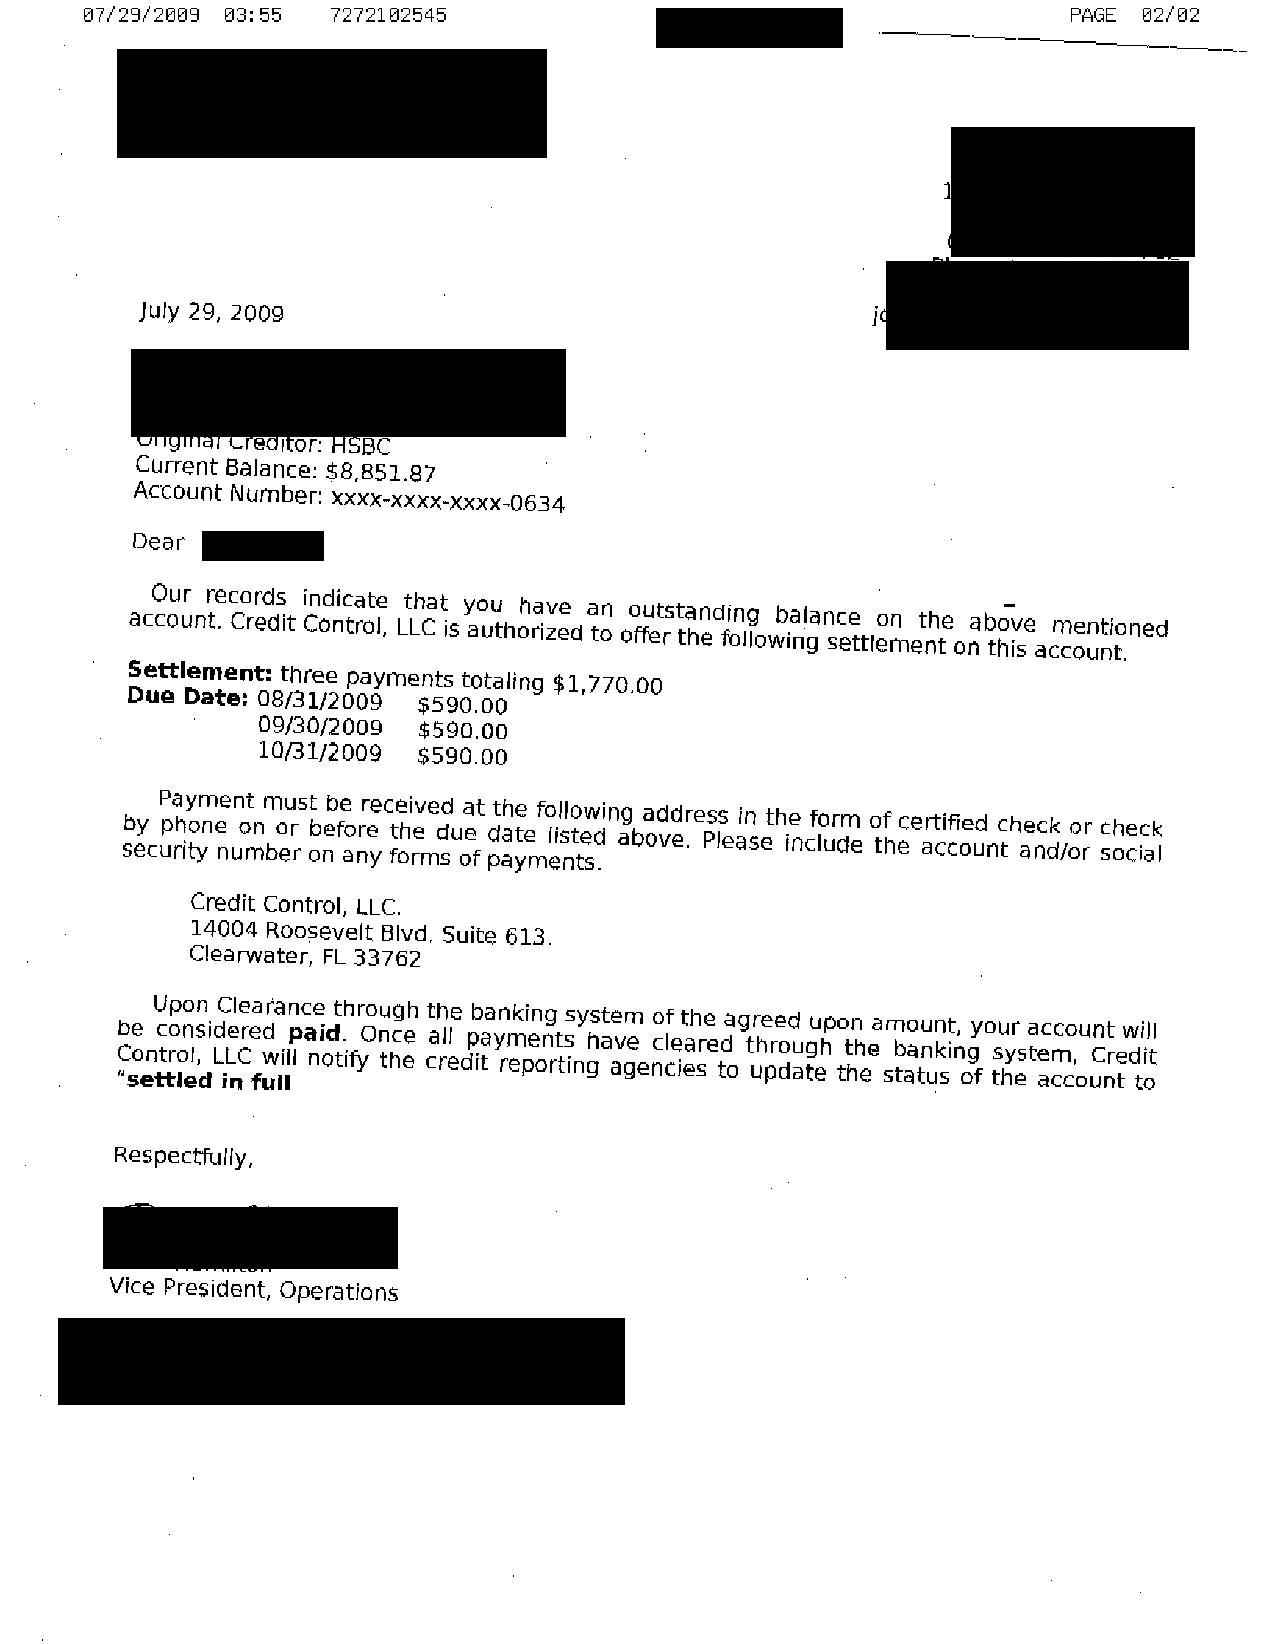 HSBC Debt Settlement Letter Saved $7081